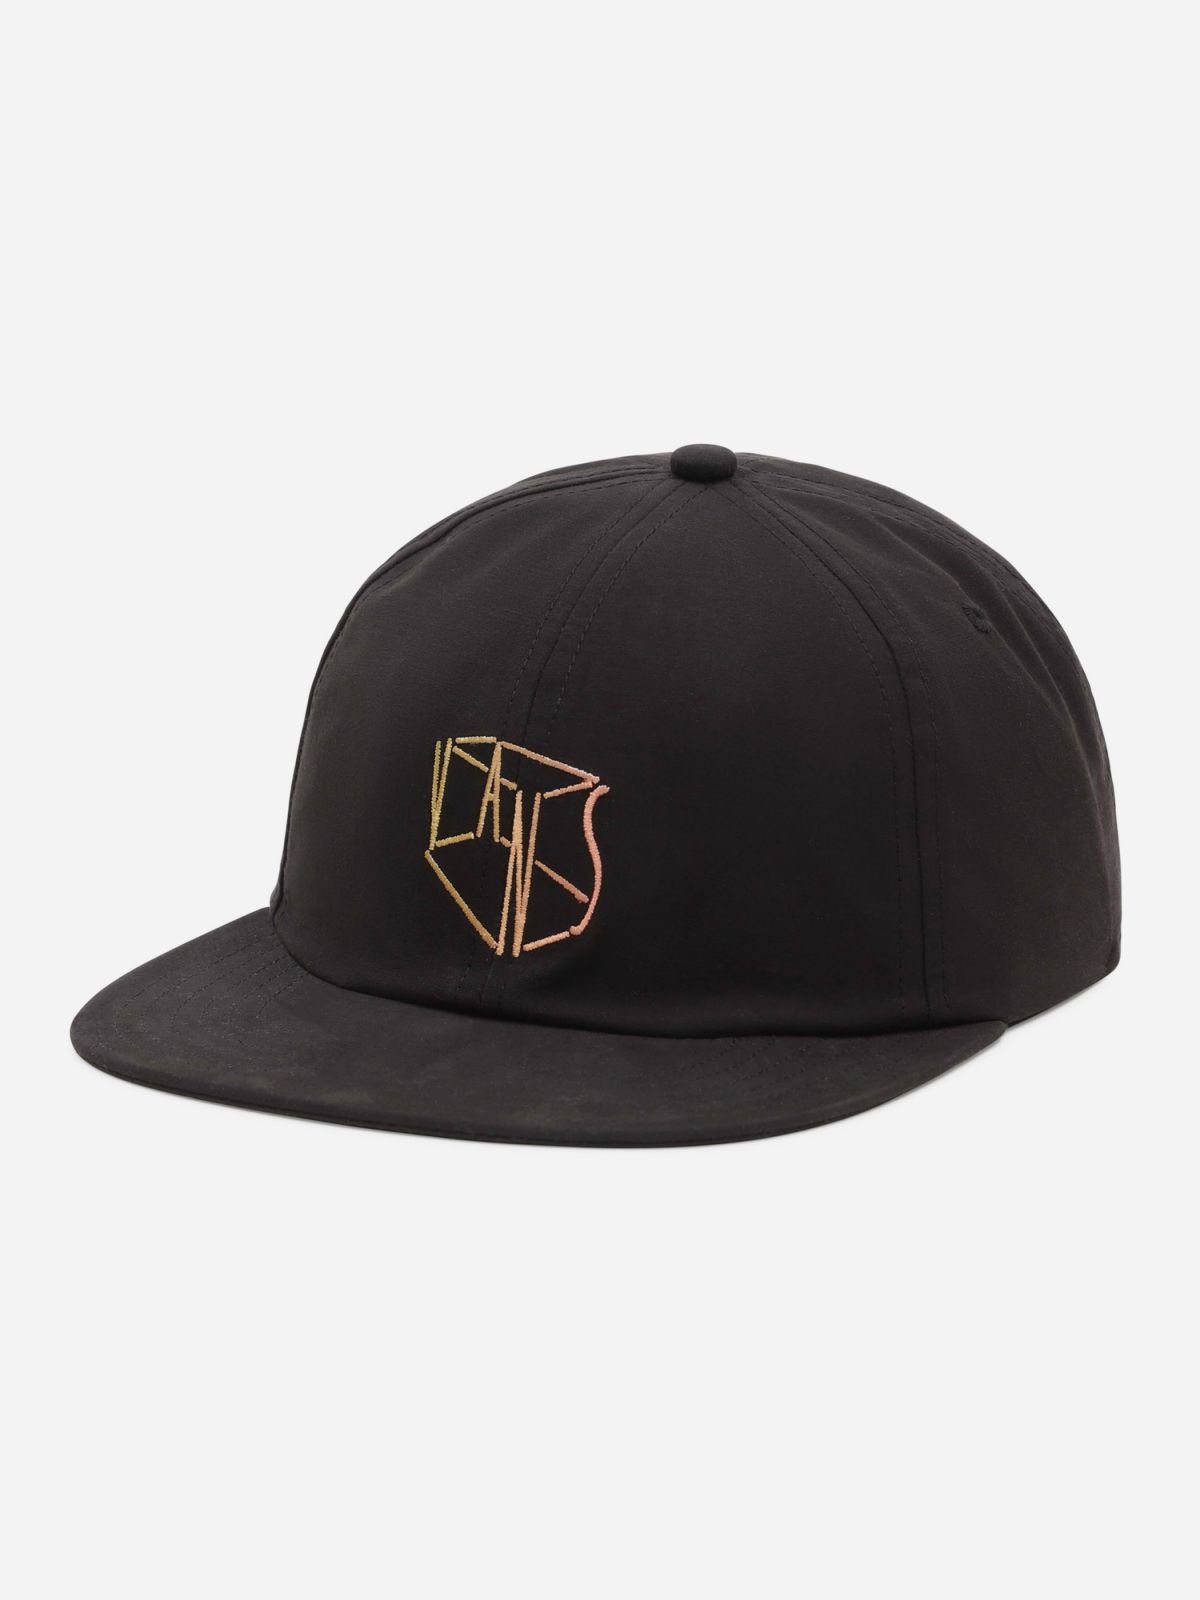  כובע מצחייה עם לוגו רקום / גברים של VANS